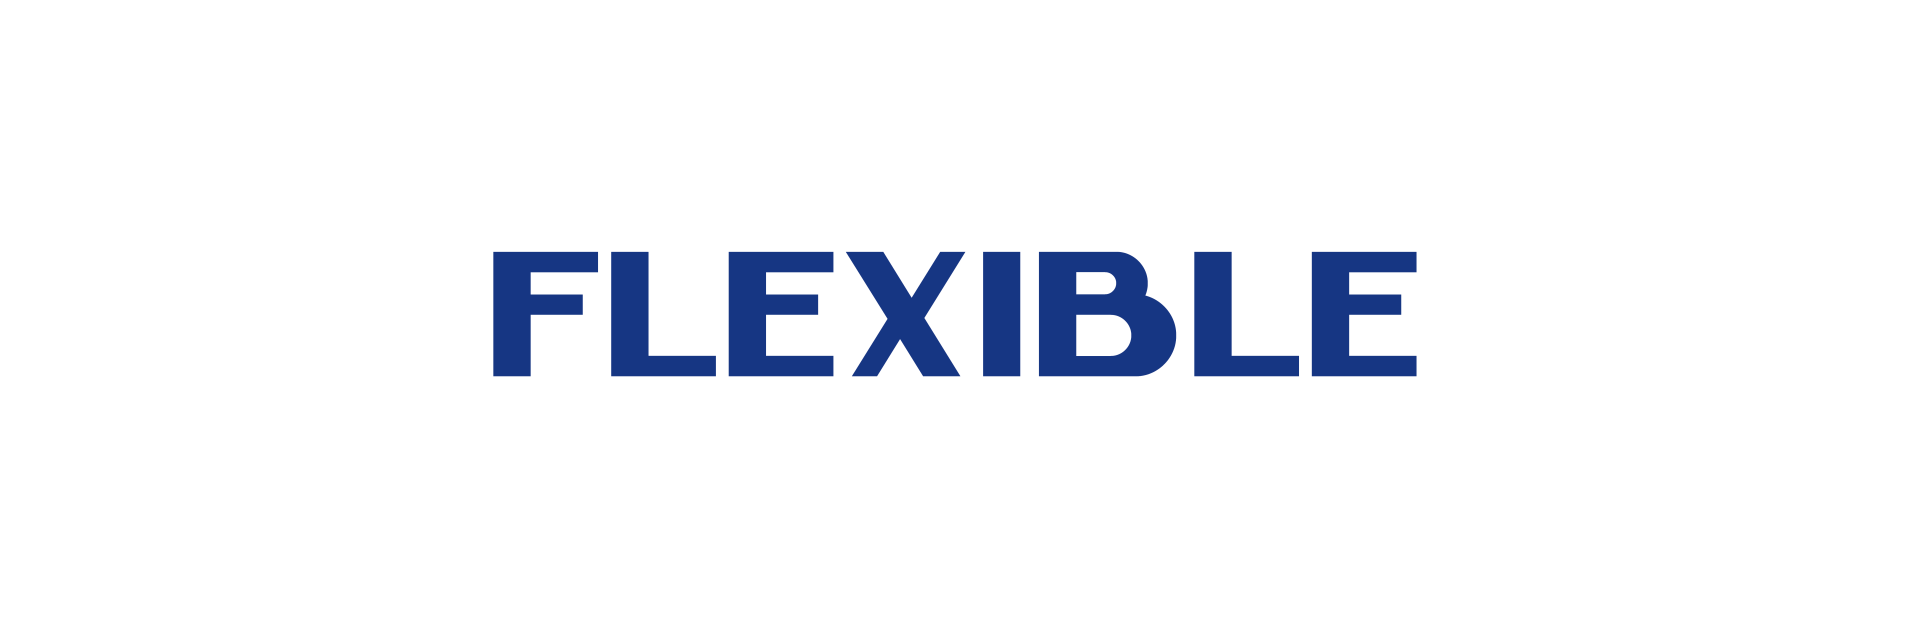 Flexible Text - 2